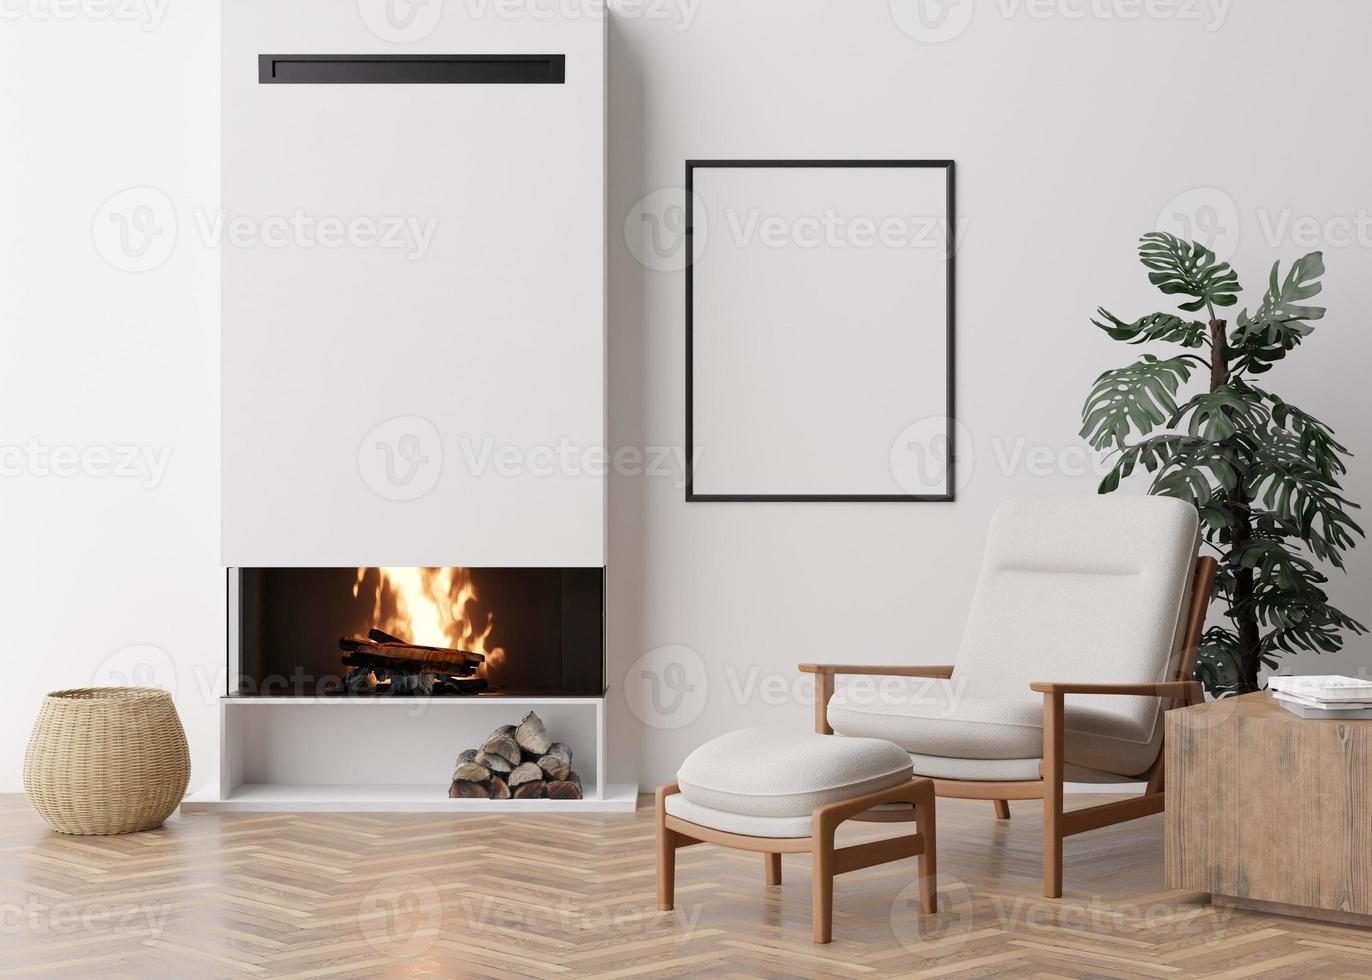 marco de imagen vertical vacío en la pared blanca en la sala de estar moderna. maqueta interior en estilo contemporáneo. espacio libre para imagen, póster. butaca, chimenea, planta monstera. representación 3d foto